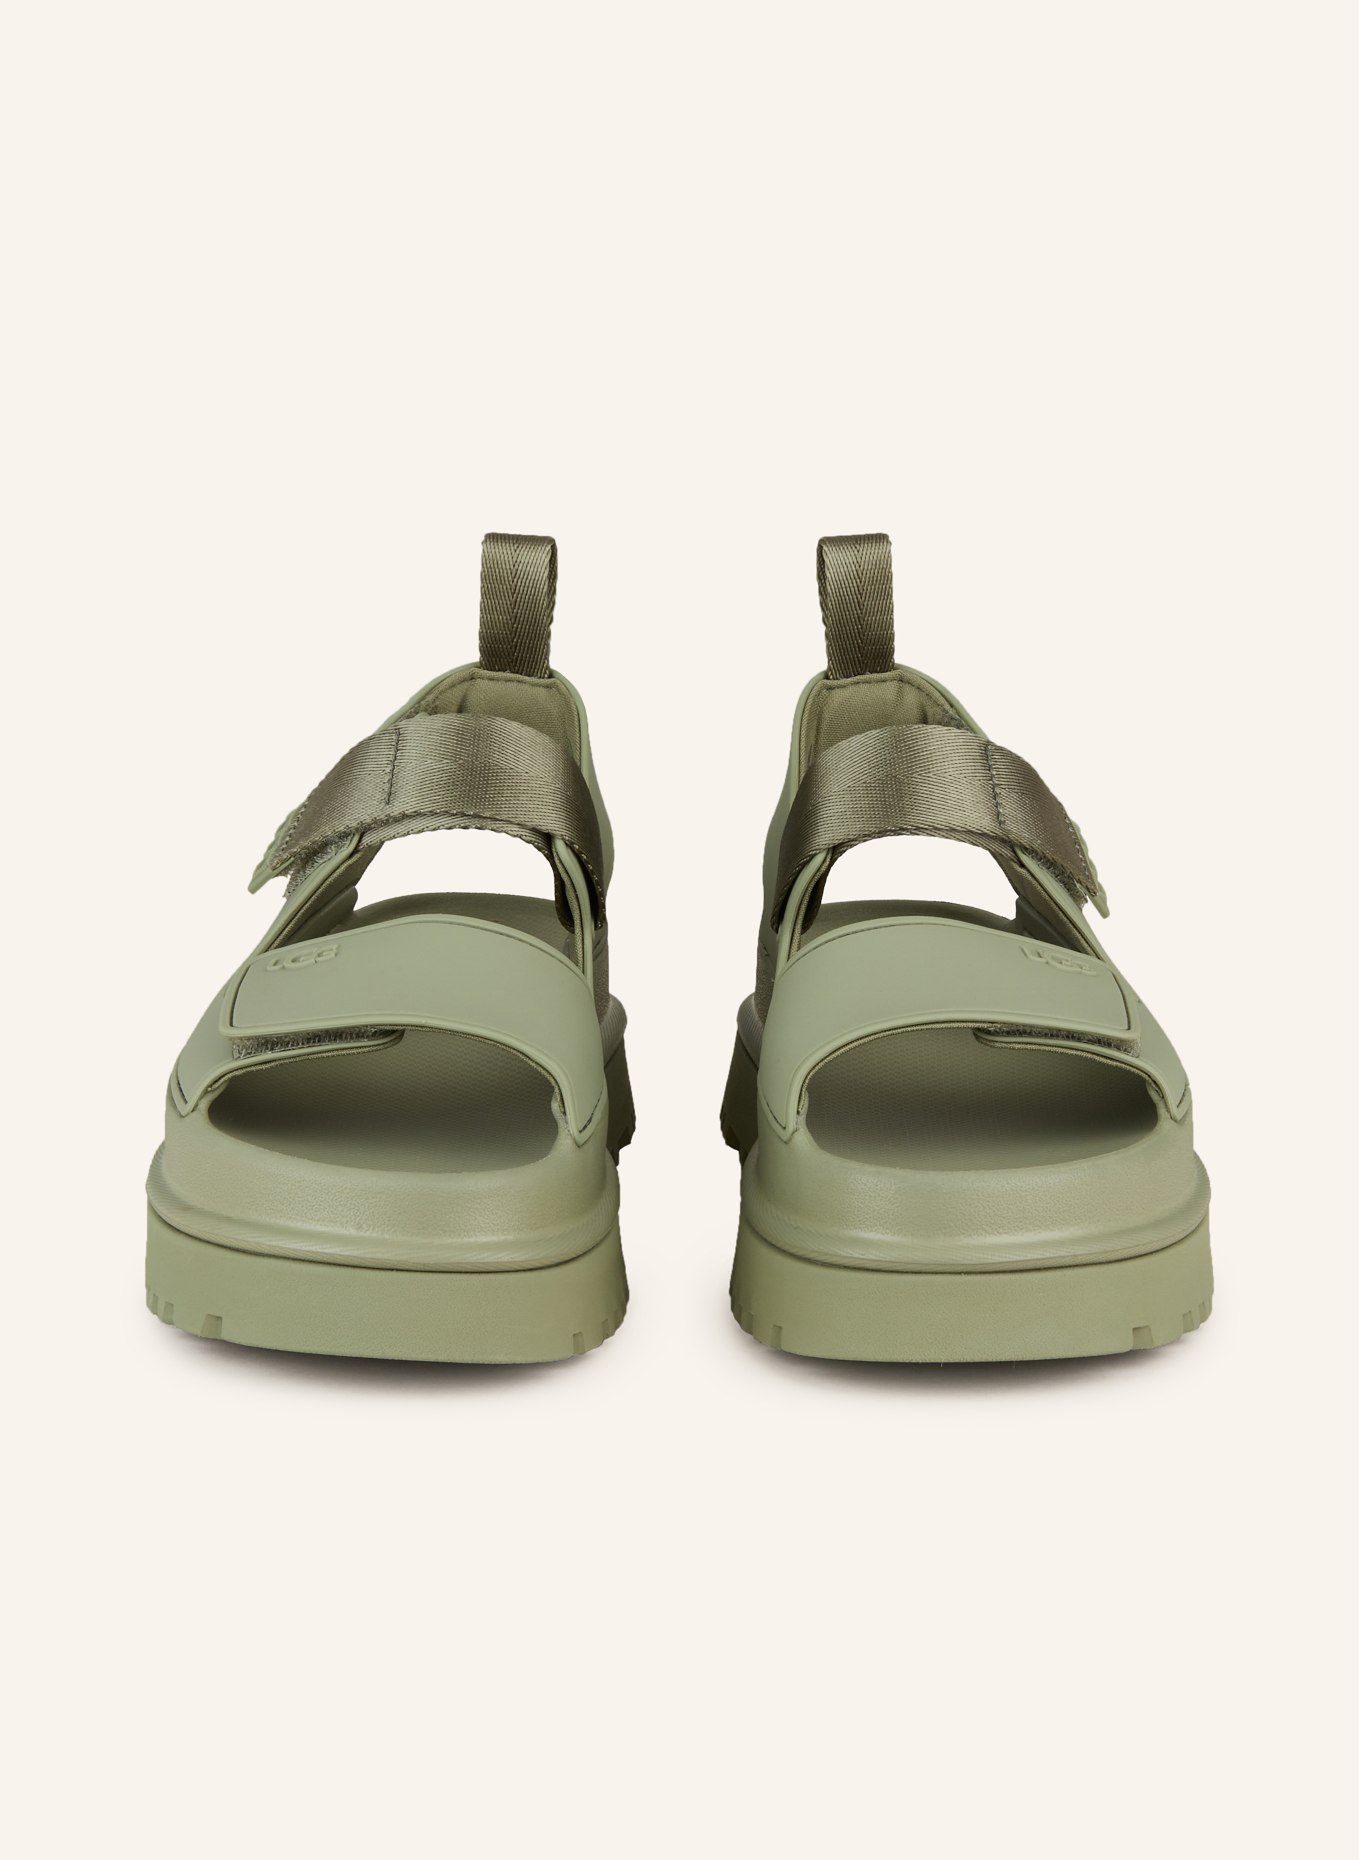 UGG Platform sandals GOLDEN GLOW, Color: OLIVE (Image 3)